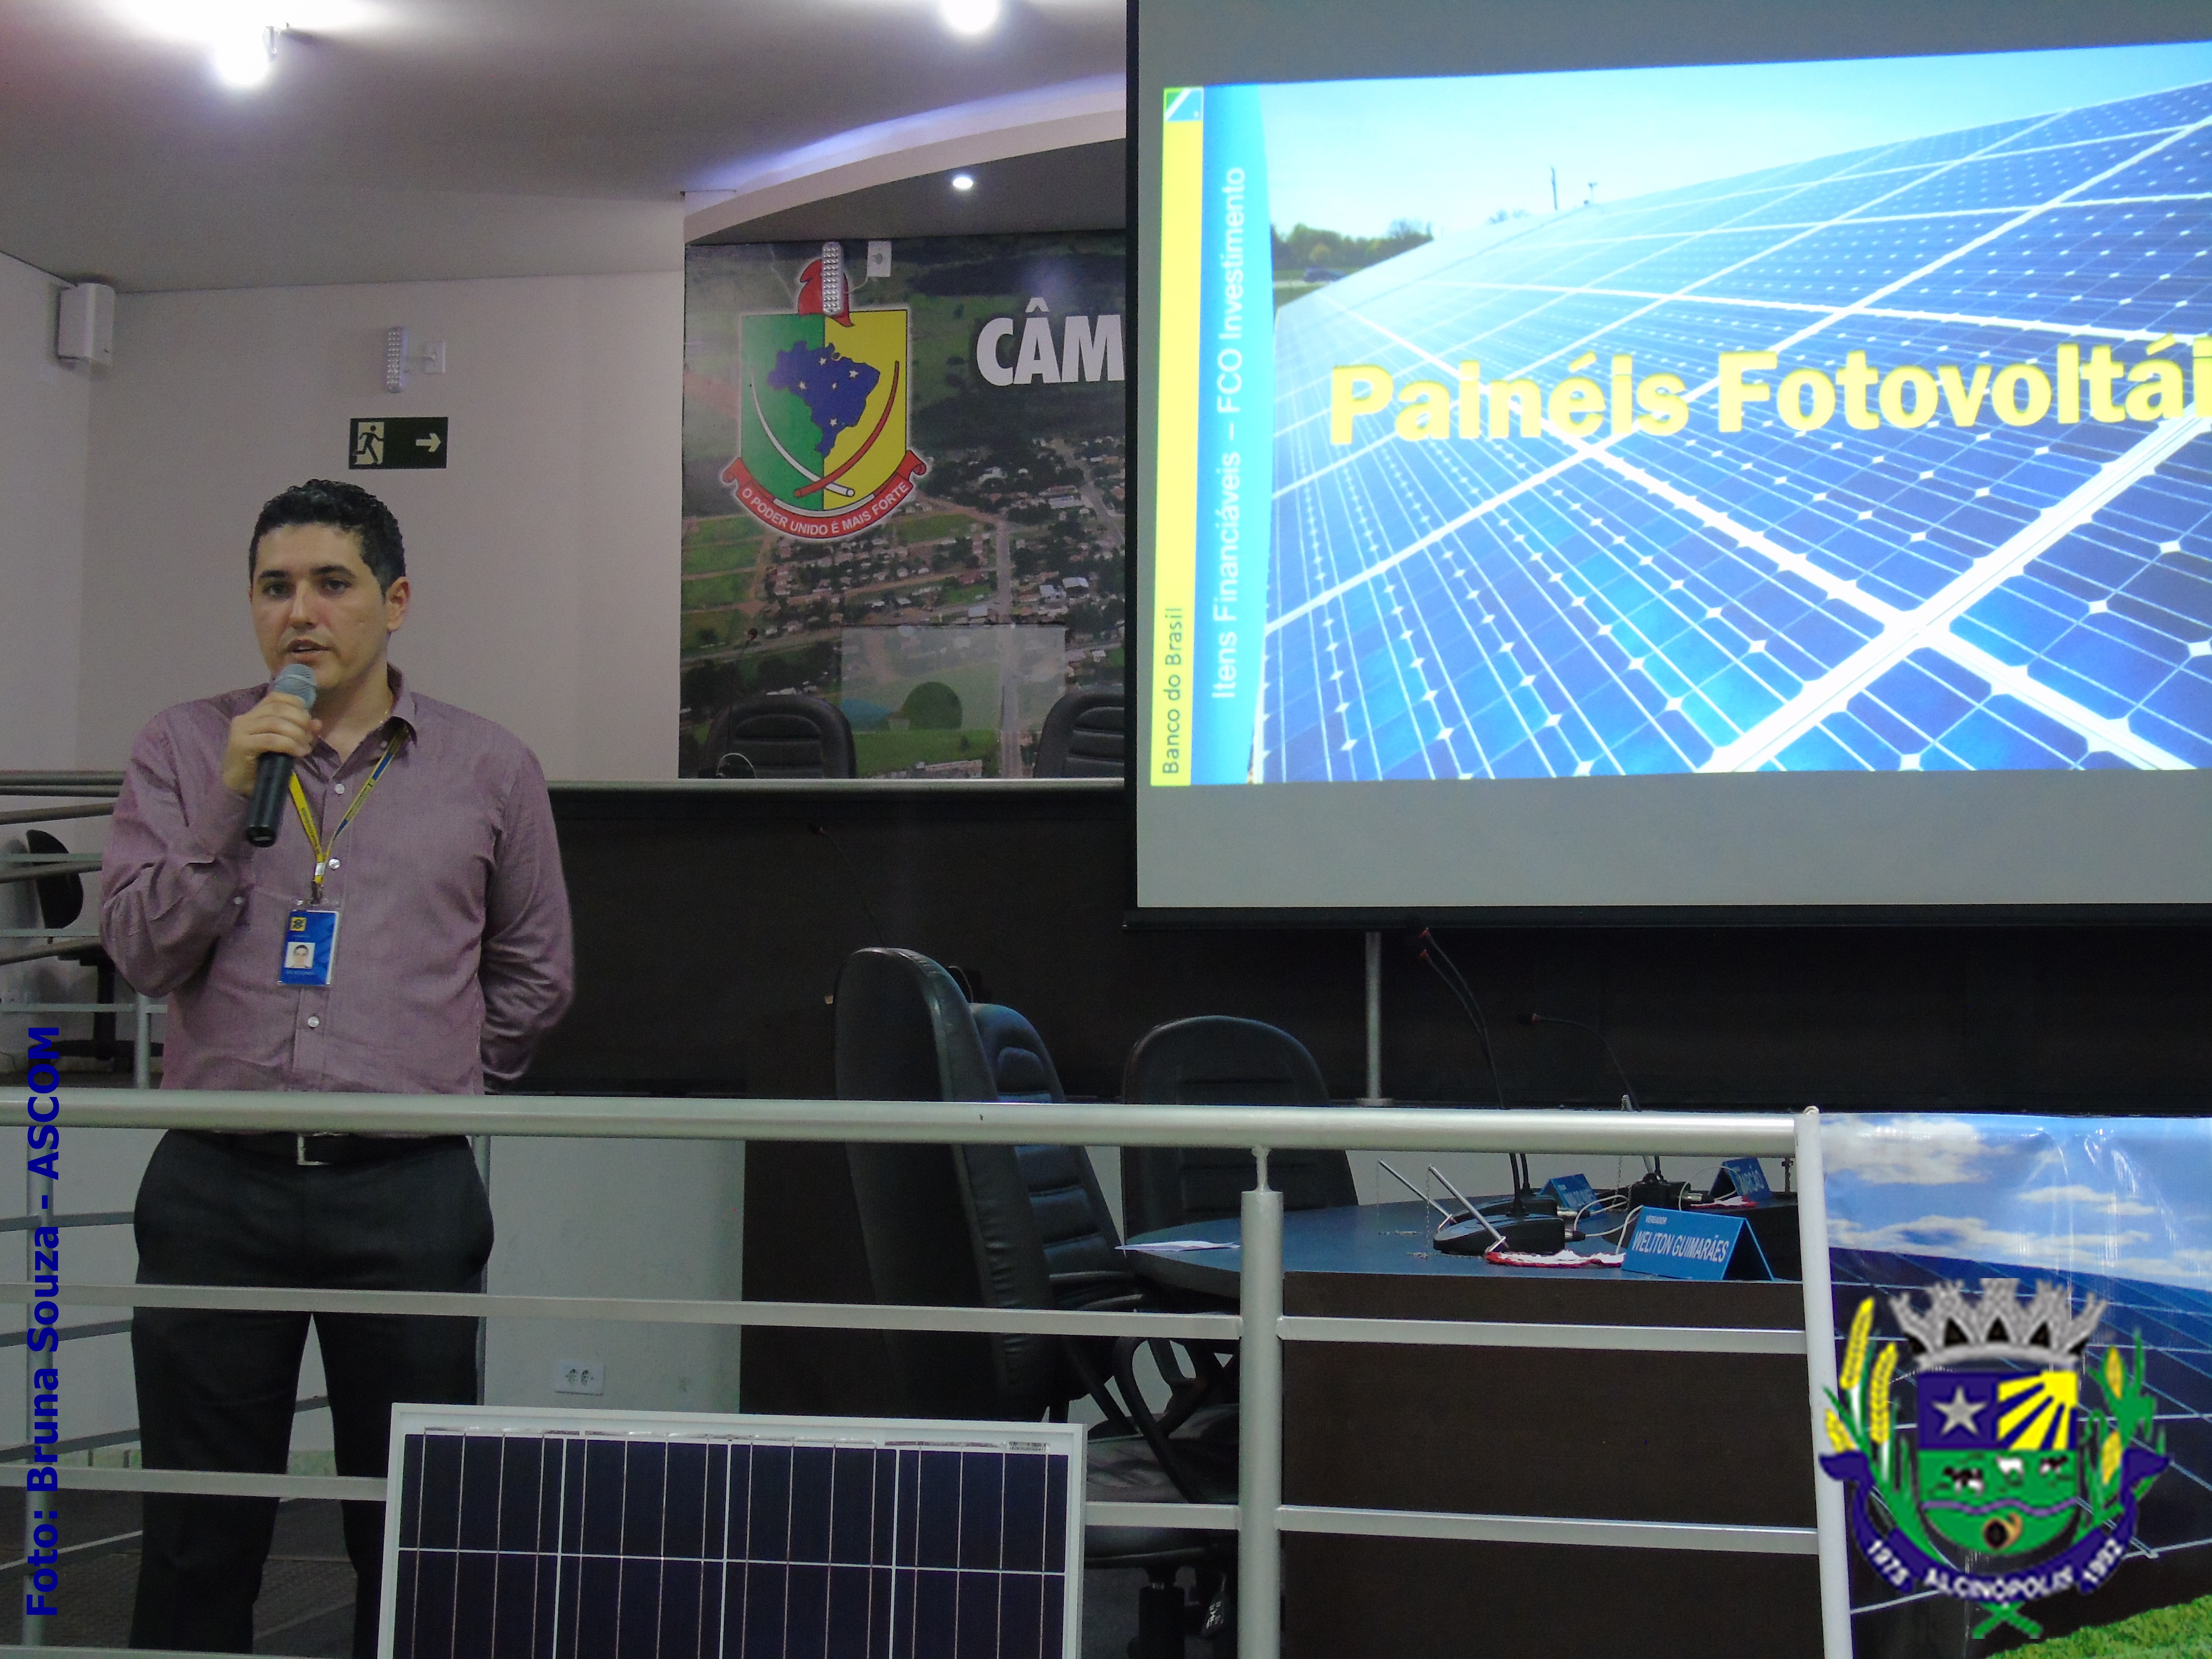 Vereadores participam de reunião sobre painéis fotovoltaicos